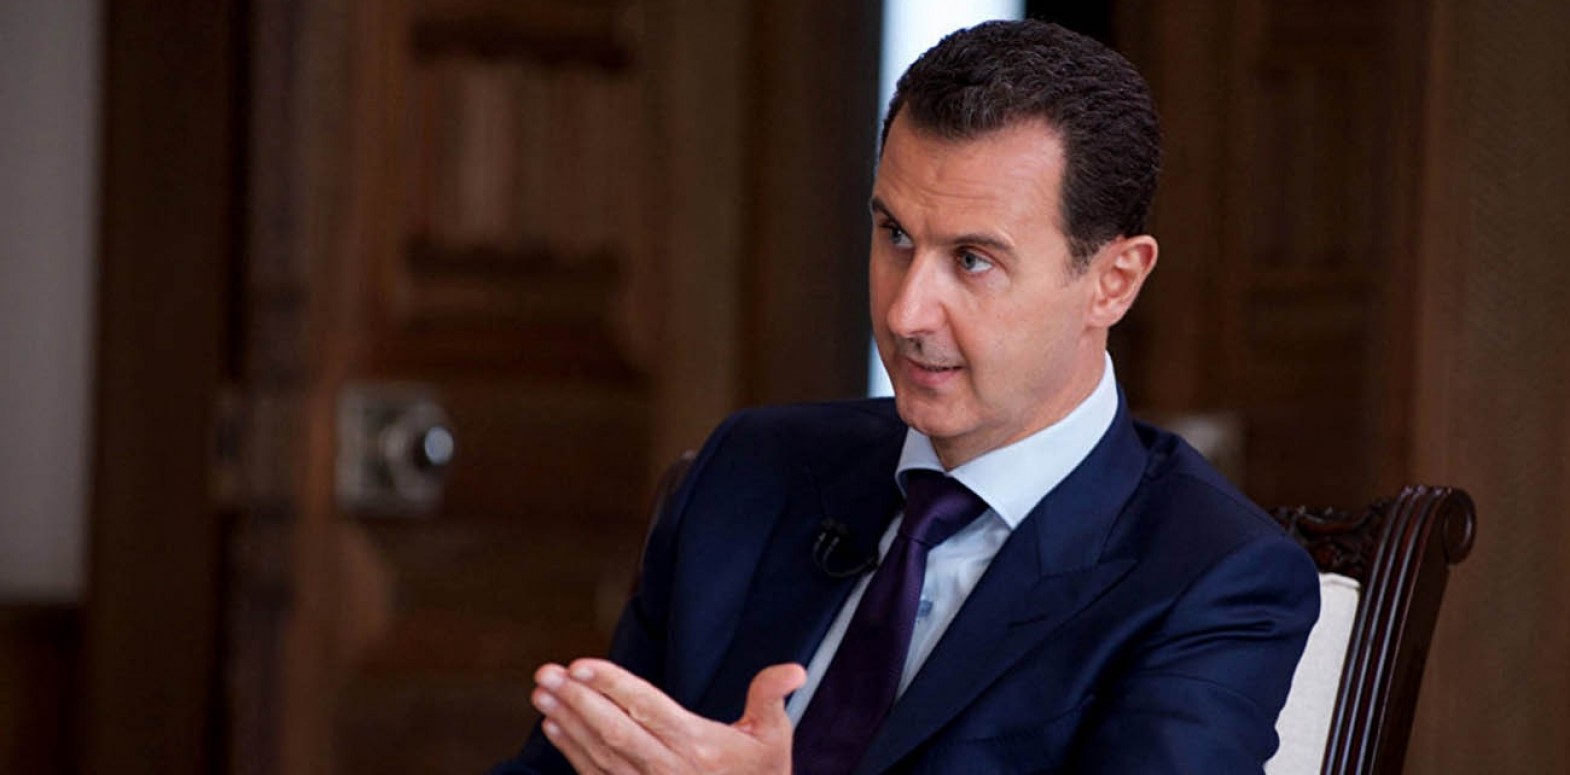 هل فرض الاتحاد الأوروبي حديثاً عقوبات على بشار الأسد؟